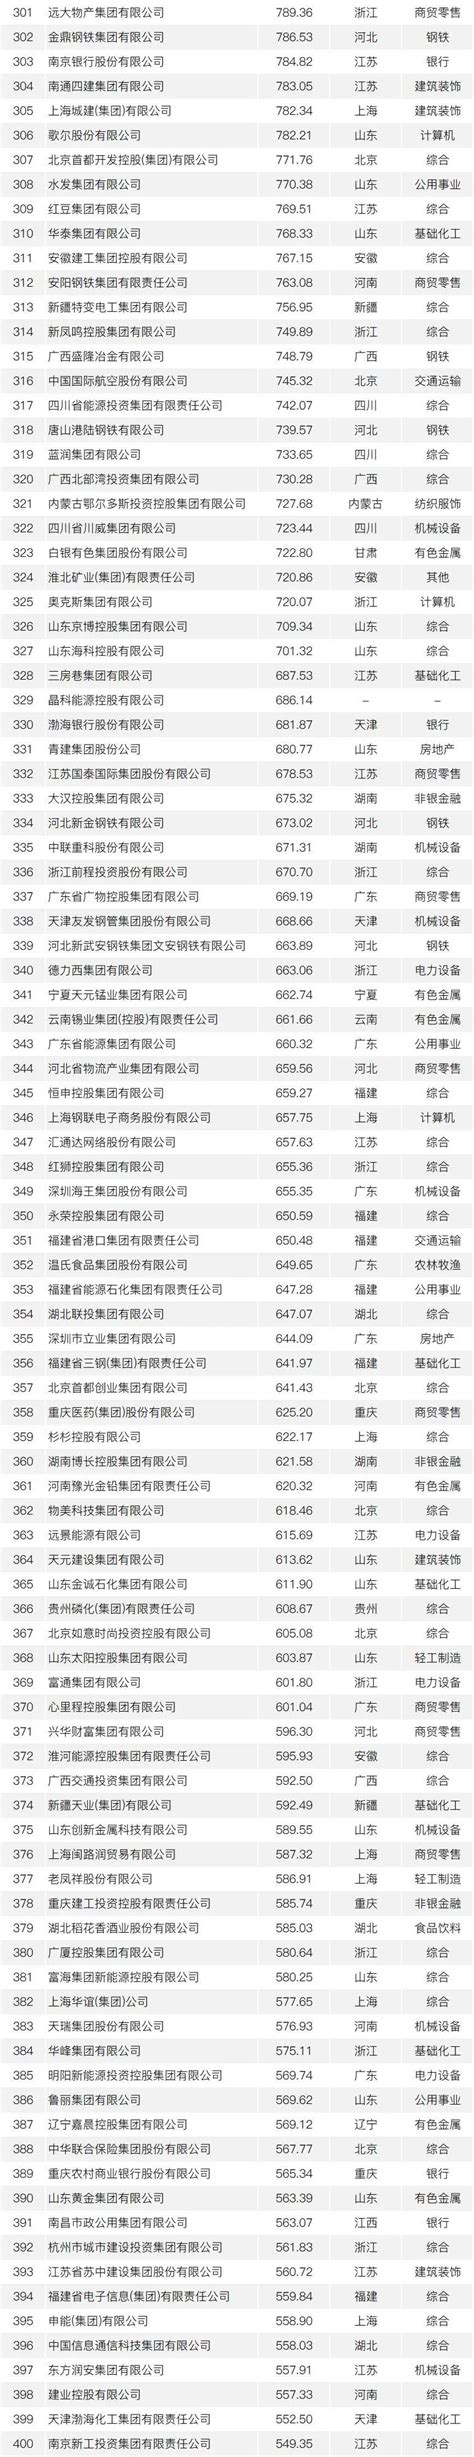 中国交通500强（企业榜单）正式发布 - 中国网